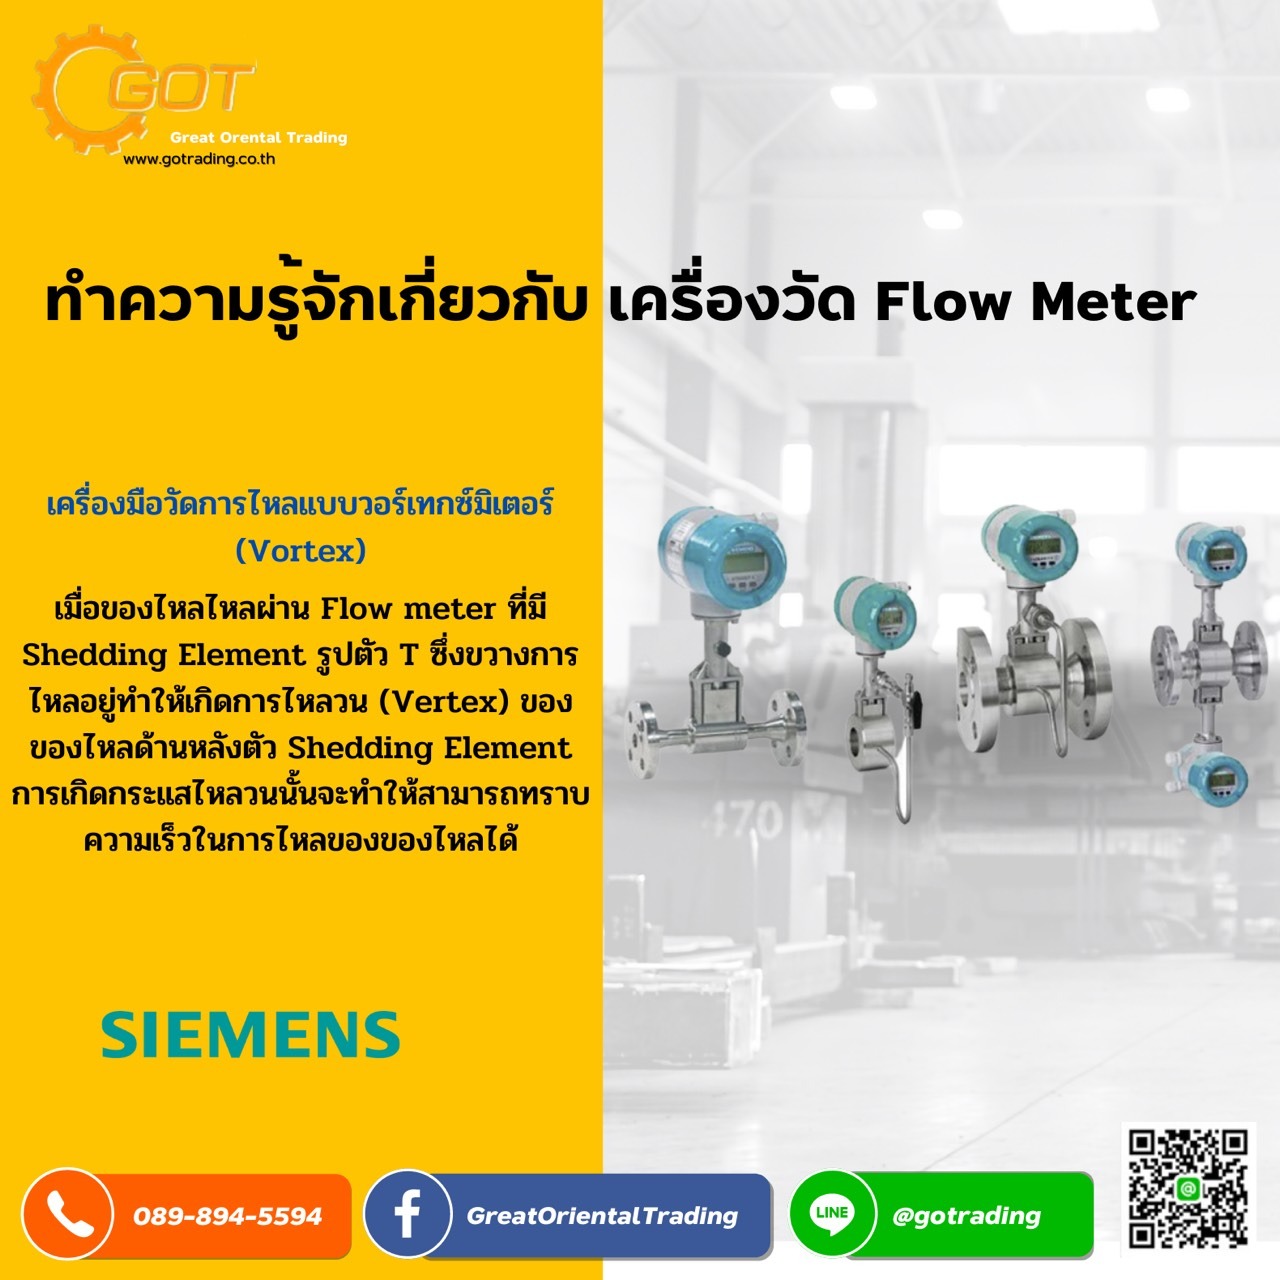 เครื่องมือวัด Flow Meter” หนึ่งในเครื่องมือที่มีส่วนช่วยในงานอุตสาหกรรมด้านการวัดอัตราการไหลสำหรับงานอุตสาหกรรม  เครื่องมือวัดชนิดหนึ่งที่ถูกออกแบบมาเพื่อวัดปริมาตร ปริมาณ หรือ อัตราการเคลื่อนที่ของไหล (Fluid) ผ่านภาชนะ